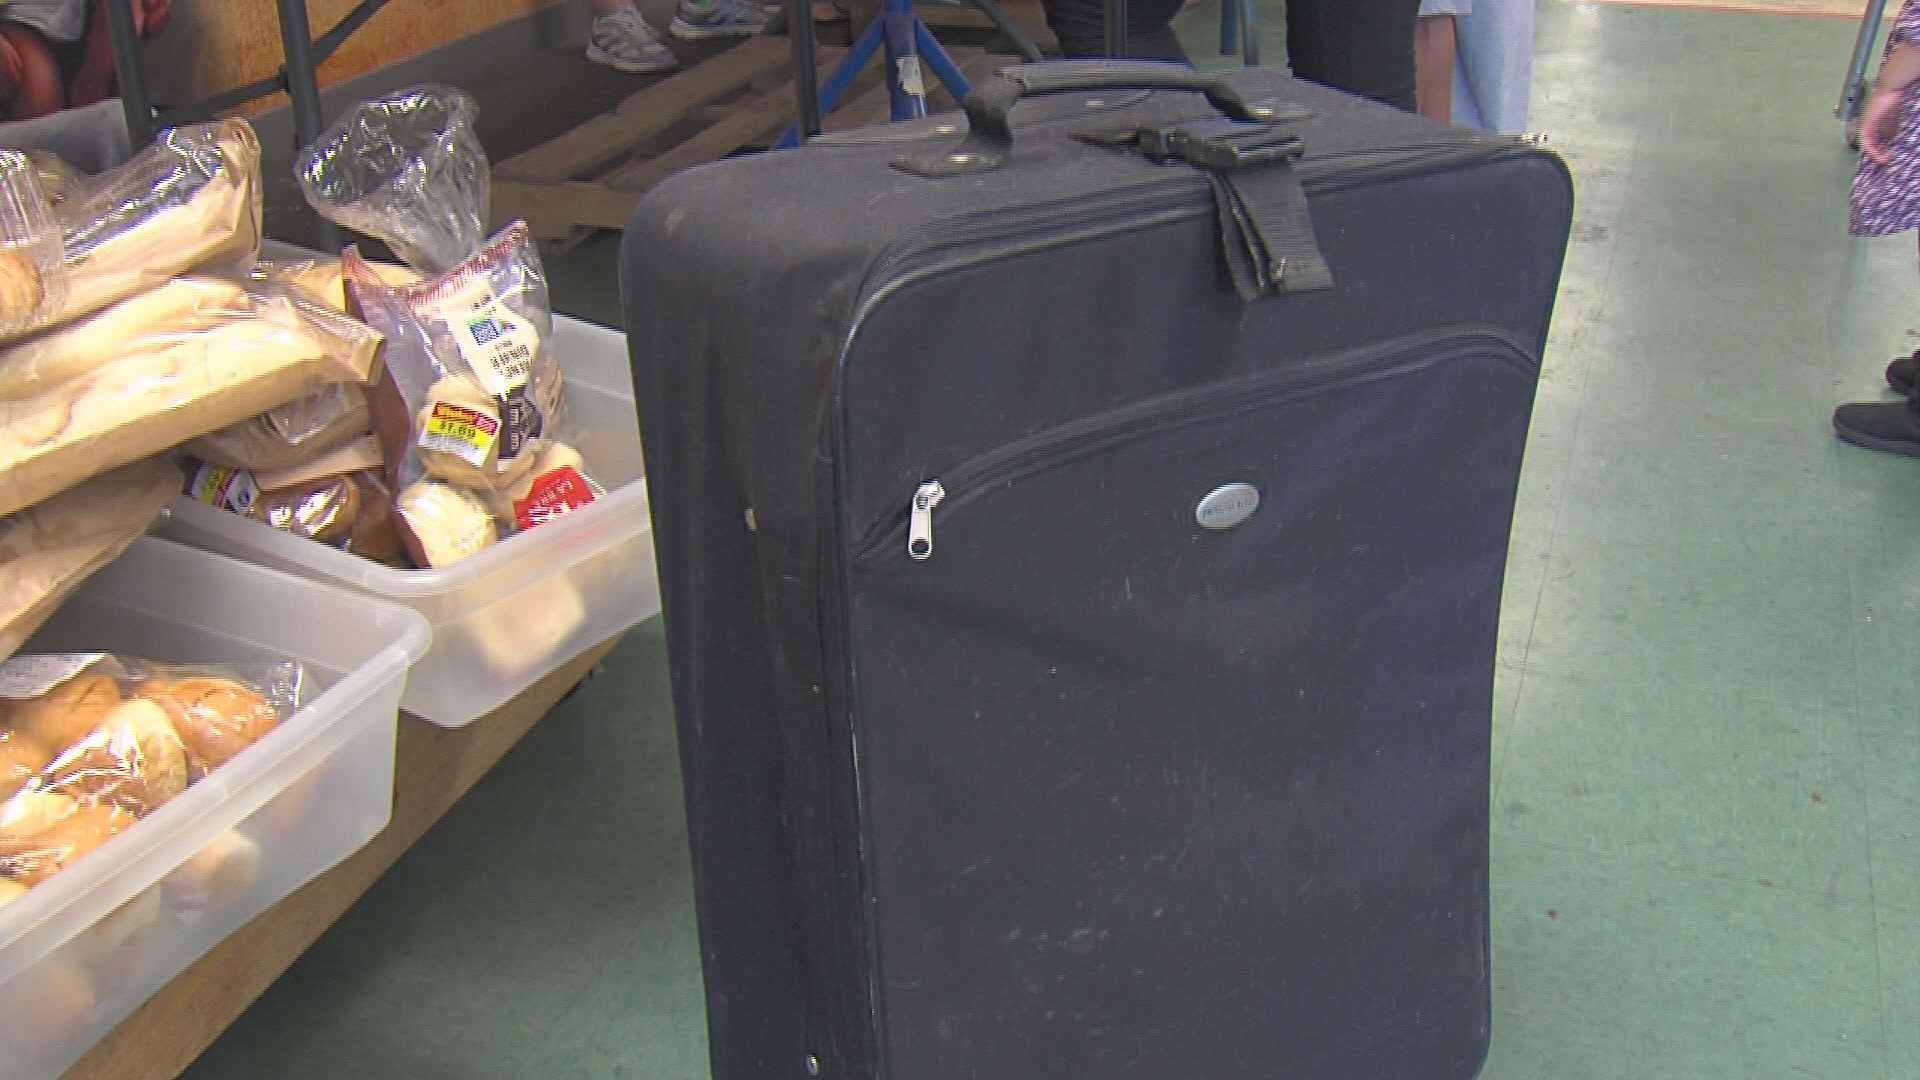 Northeast Community Fund seeks suitcases